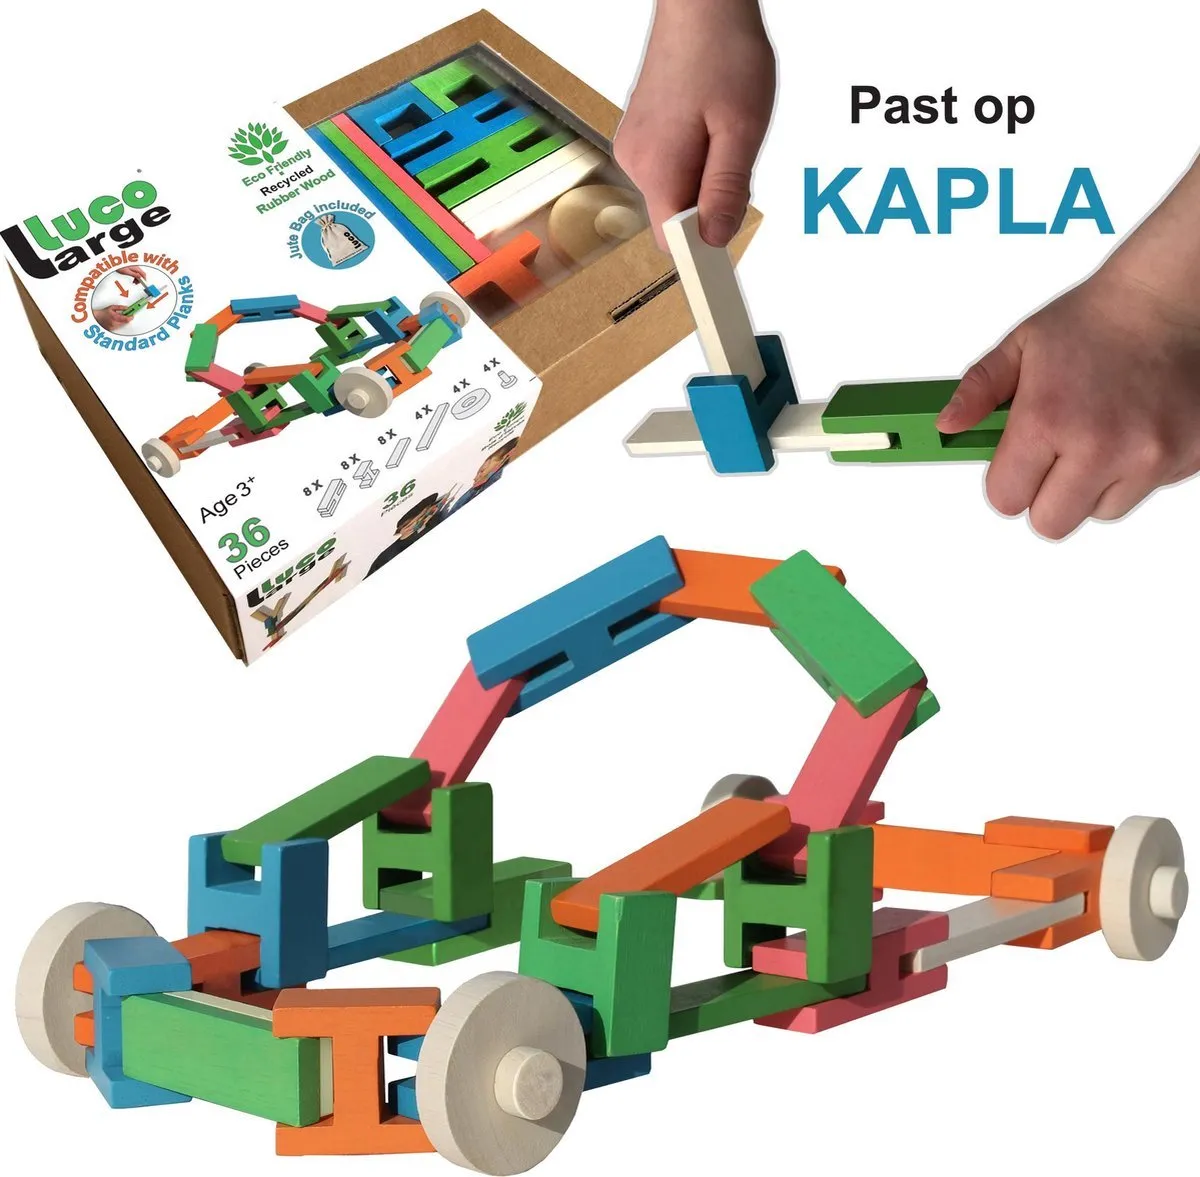 Luco Large Eco houten speel Blokken, wielen en plankjes. Uitbreiding voor KAPLA. Duurzame constructieset. 36 elementen. speelgoed